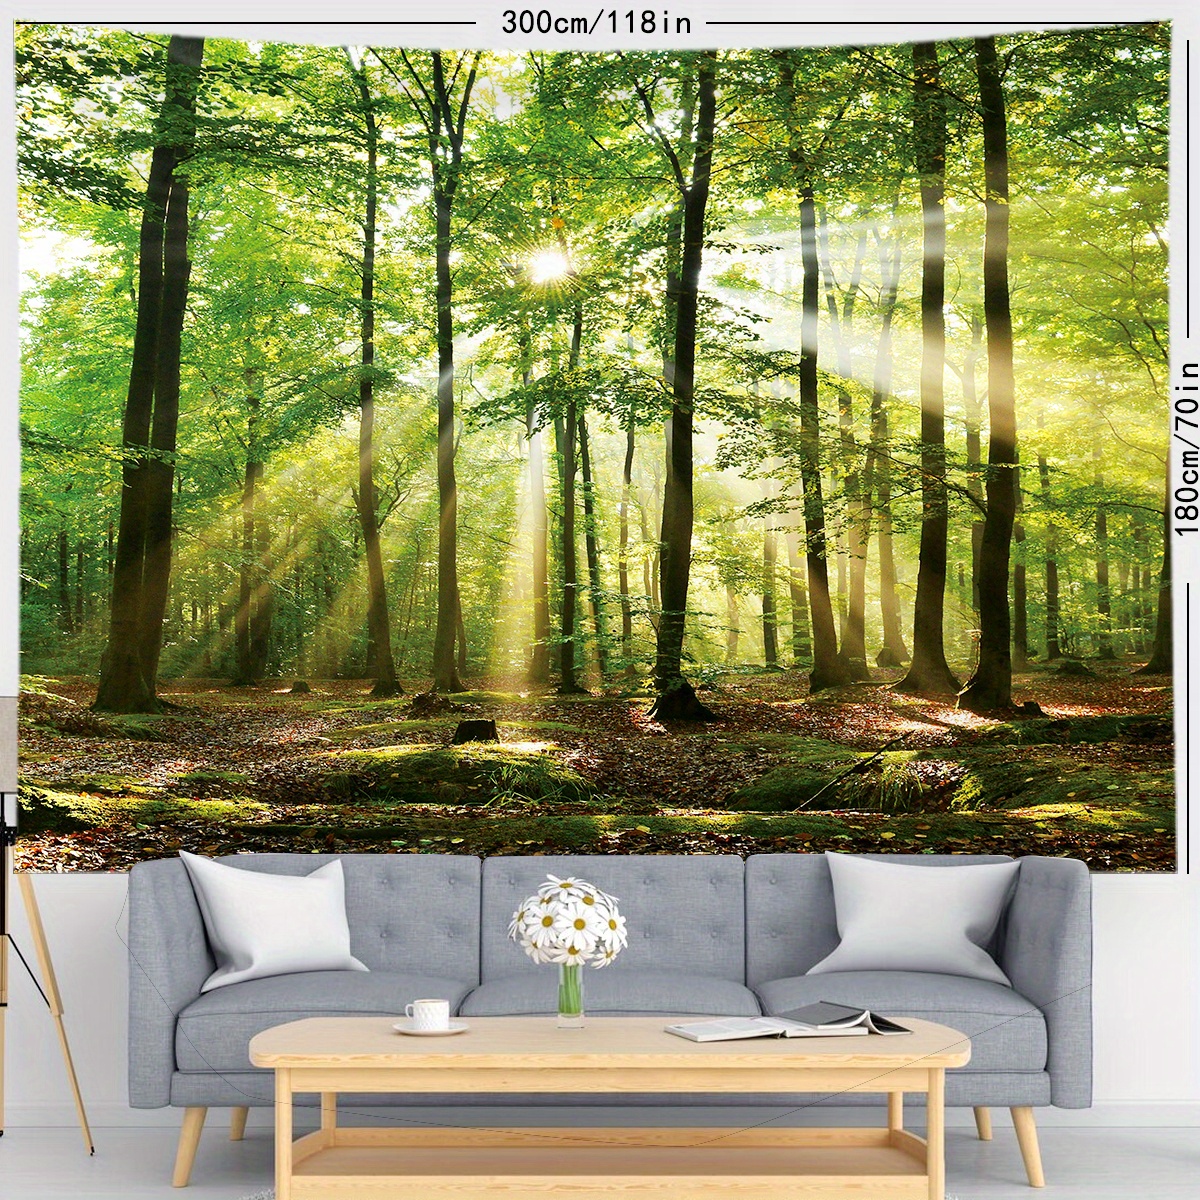 Geesui Arazzo da Parete 200 x 150cm Arazzi Foresta, Poster Natura  Decorazione per Camera da Letto, Soggiorno : : Casa e cucina